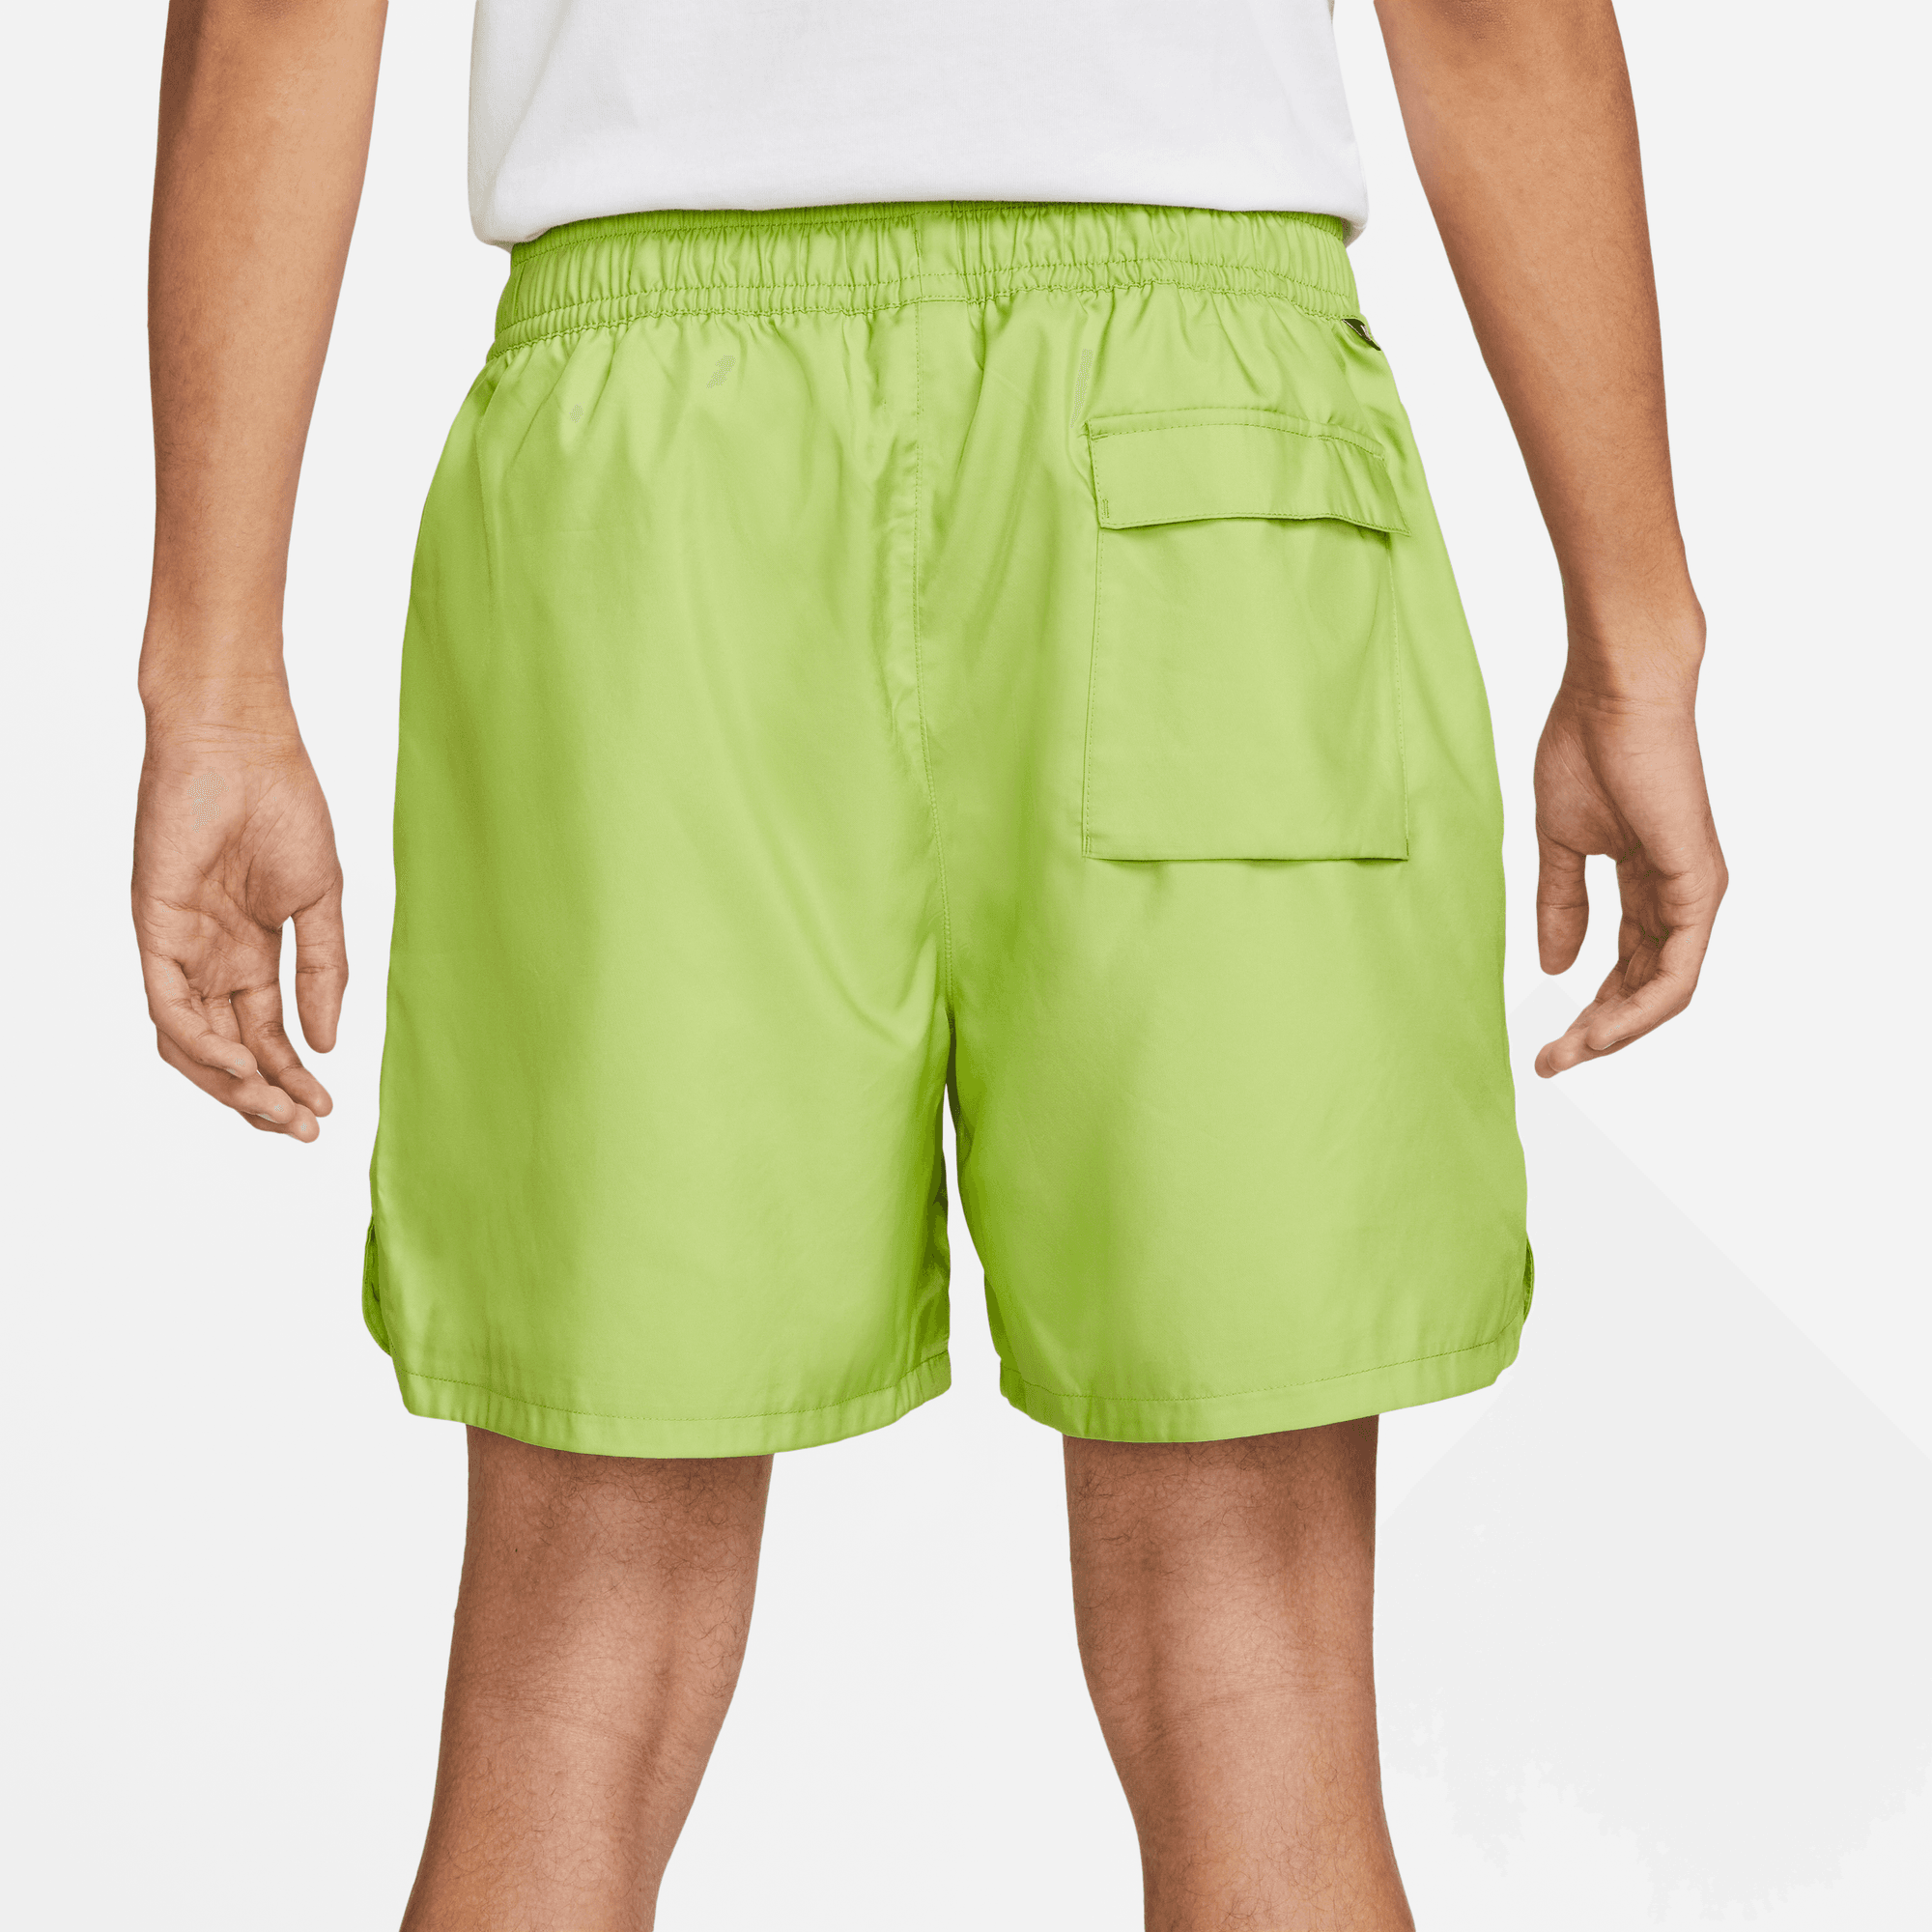 Nike Sportswear Sport Essentials Green Lined Flow Shorts